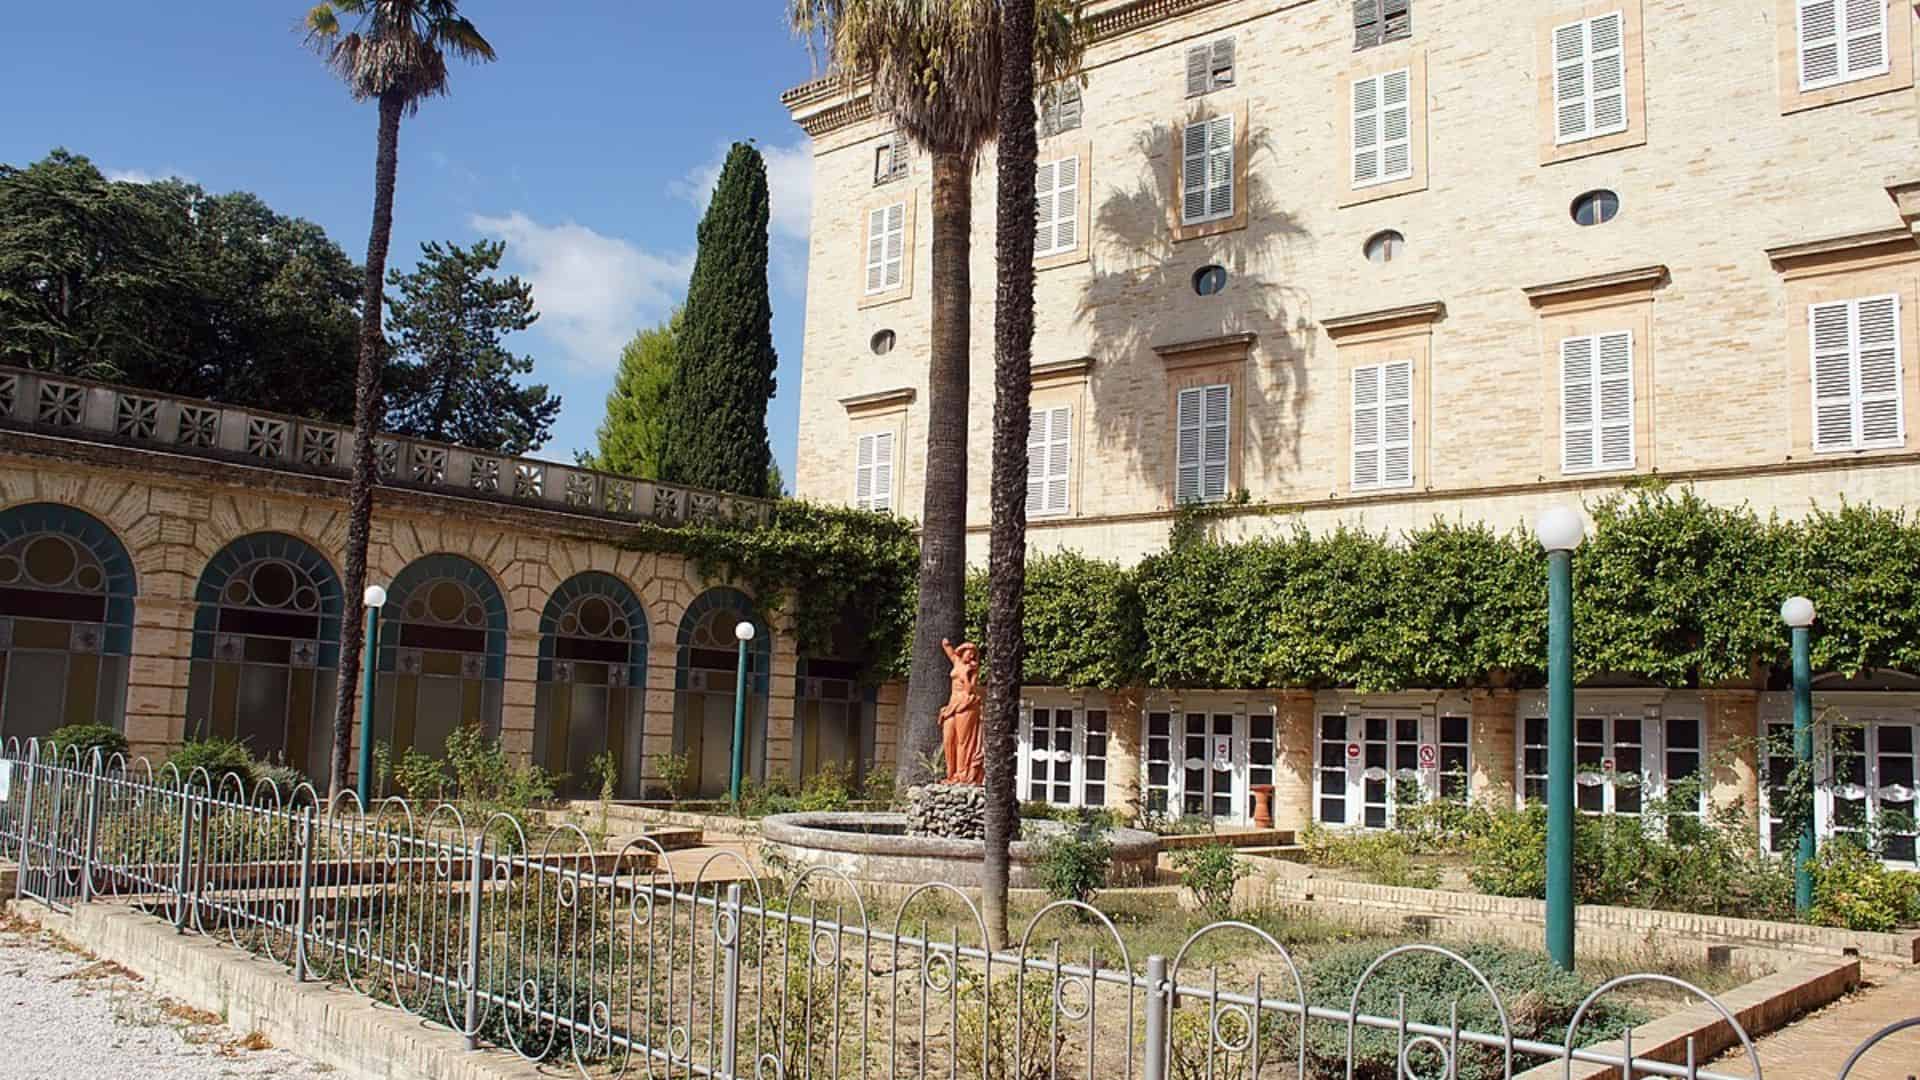 Fassade und gärten von villa vitali in Fermo (bildquelle: padercol)